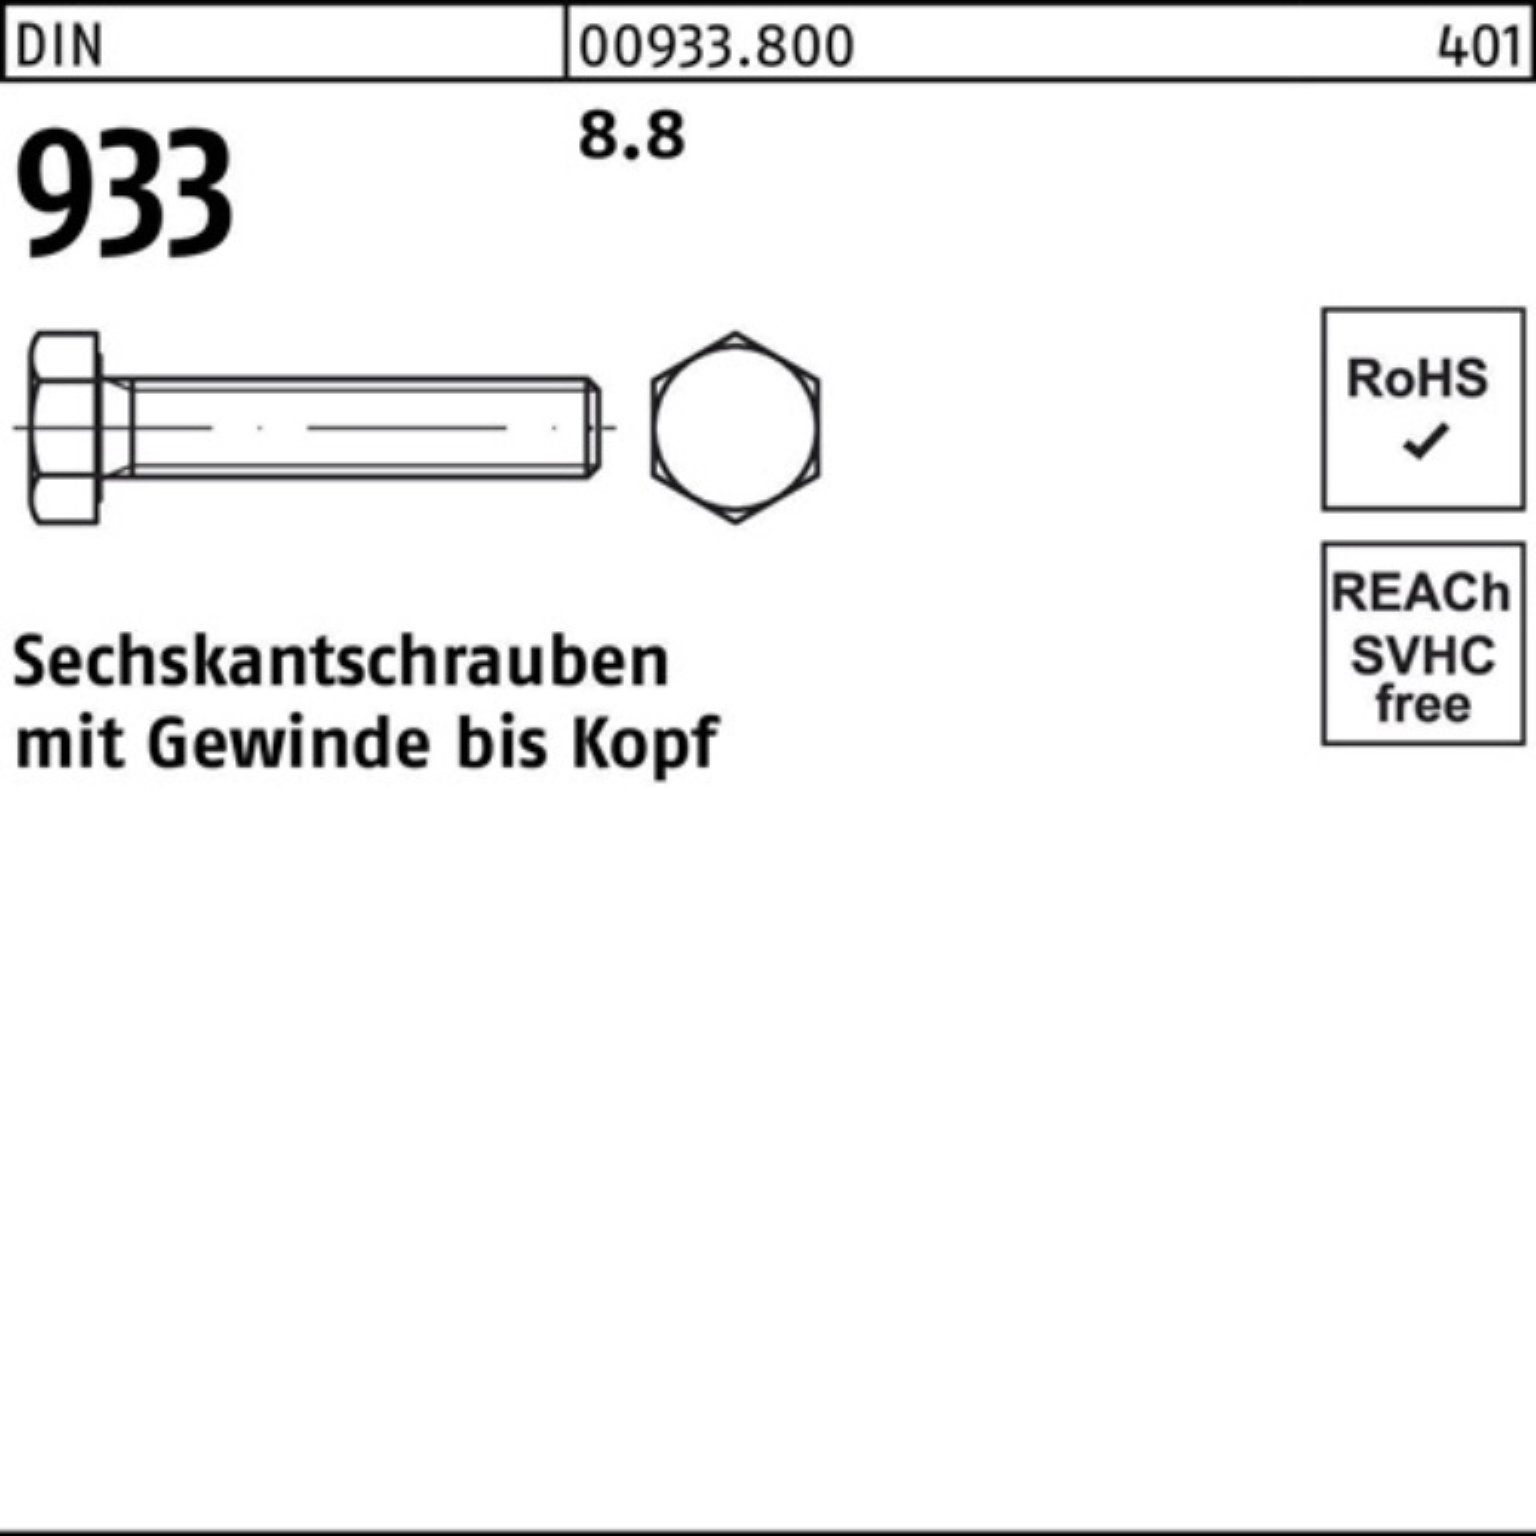 VG 65 Sechskantschraube Sechskantschraube Stück 200 DIN 200er DIN Reyher 933 8.8 933 Pack M4x